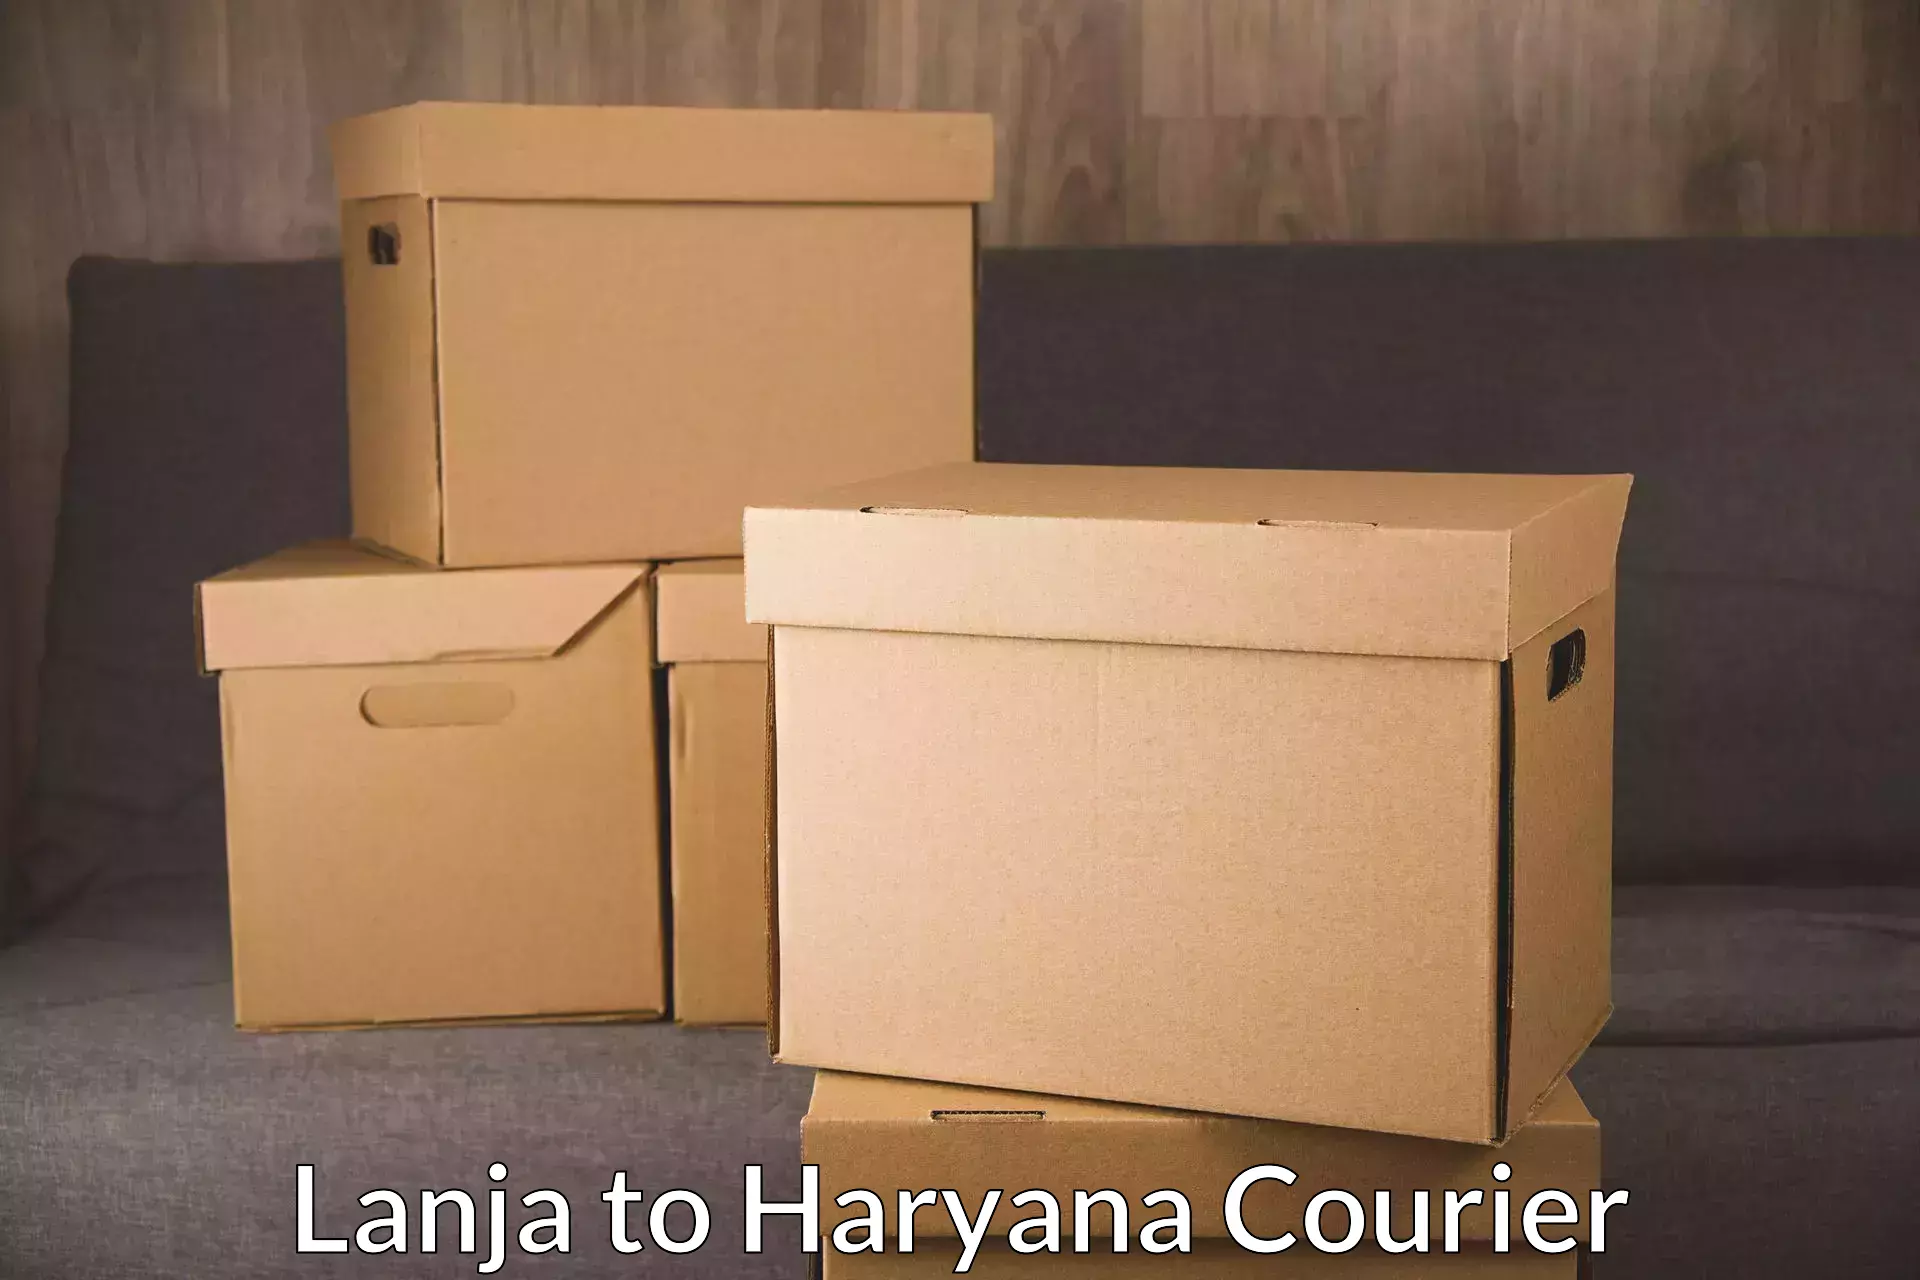 Express postal services Lanja to Haryana